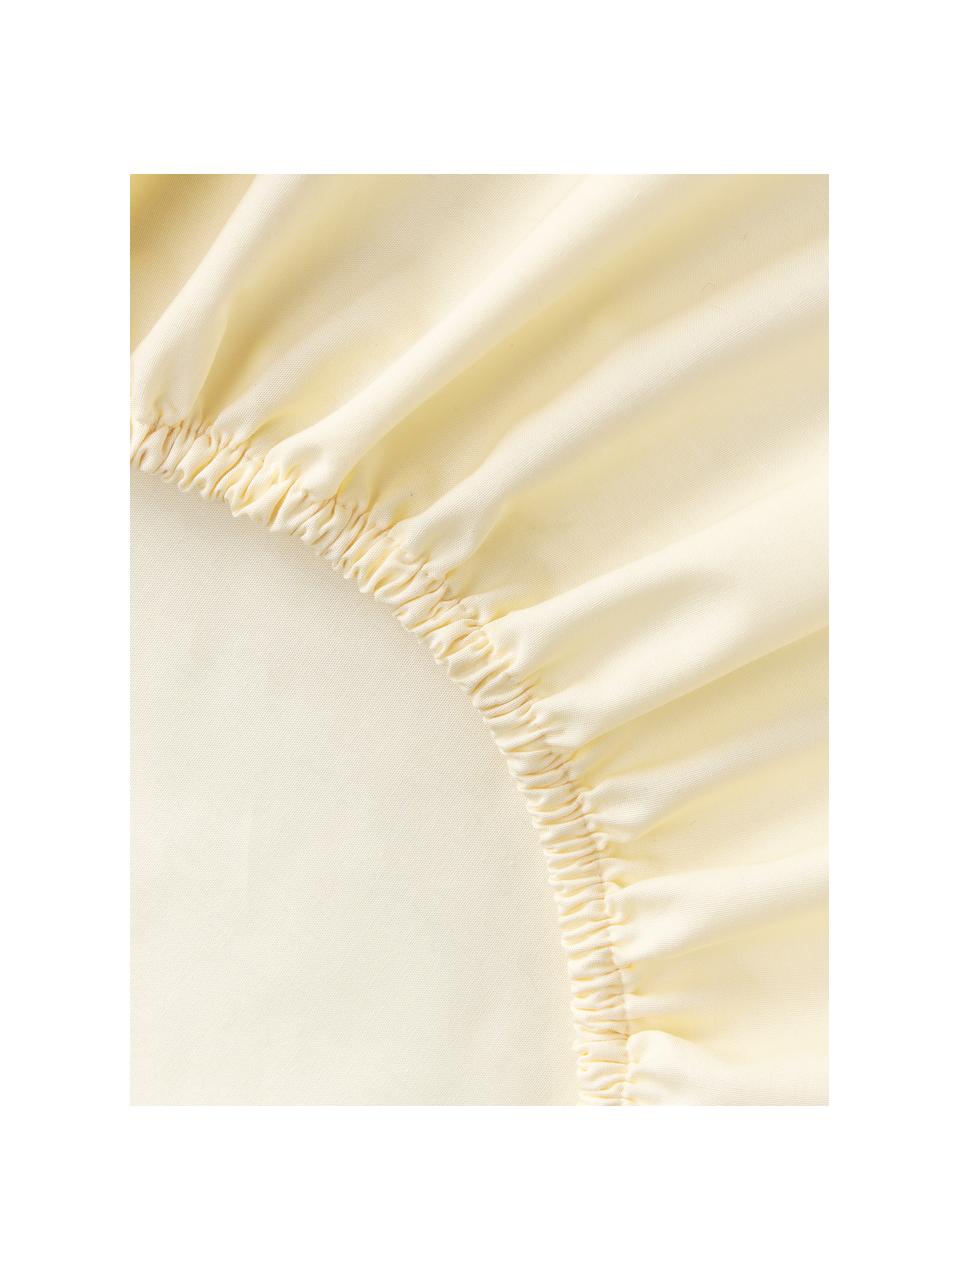 Drap-housse en percale de coton Elsie, Jaune pâle, larg. 90 x long. 200 cm, haut. 25 cm